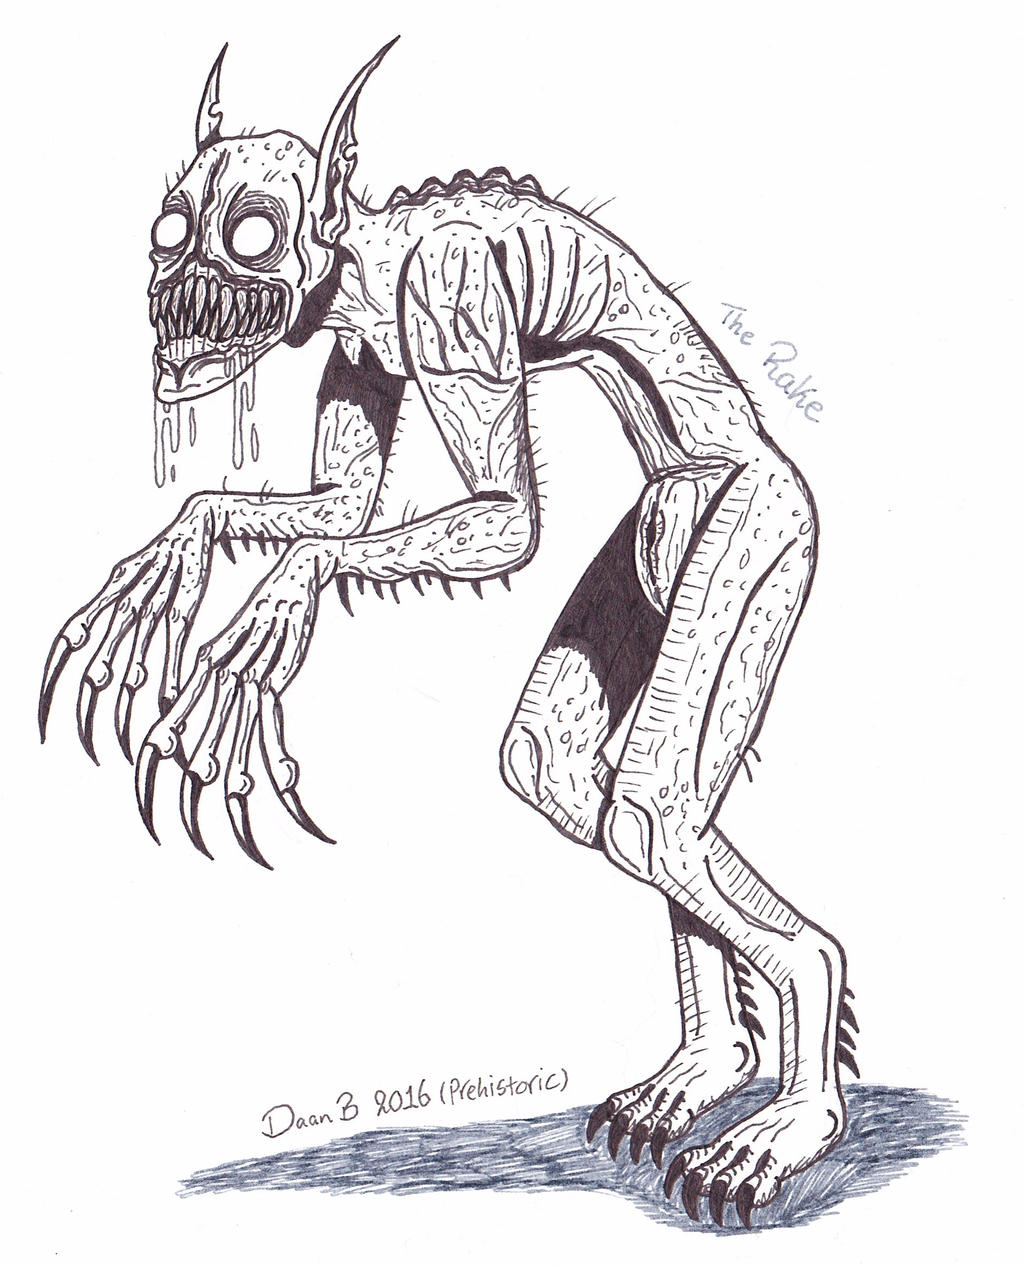 The RAKE Creepypasta Story + Drawing (Scary Horror Stories